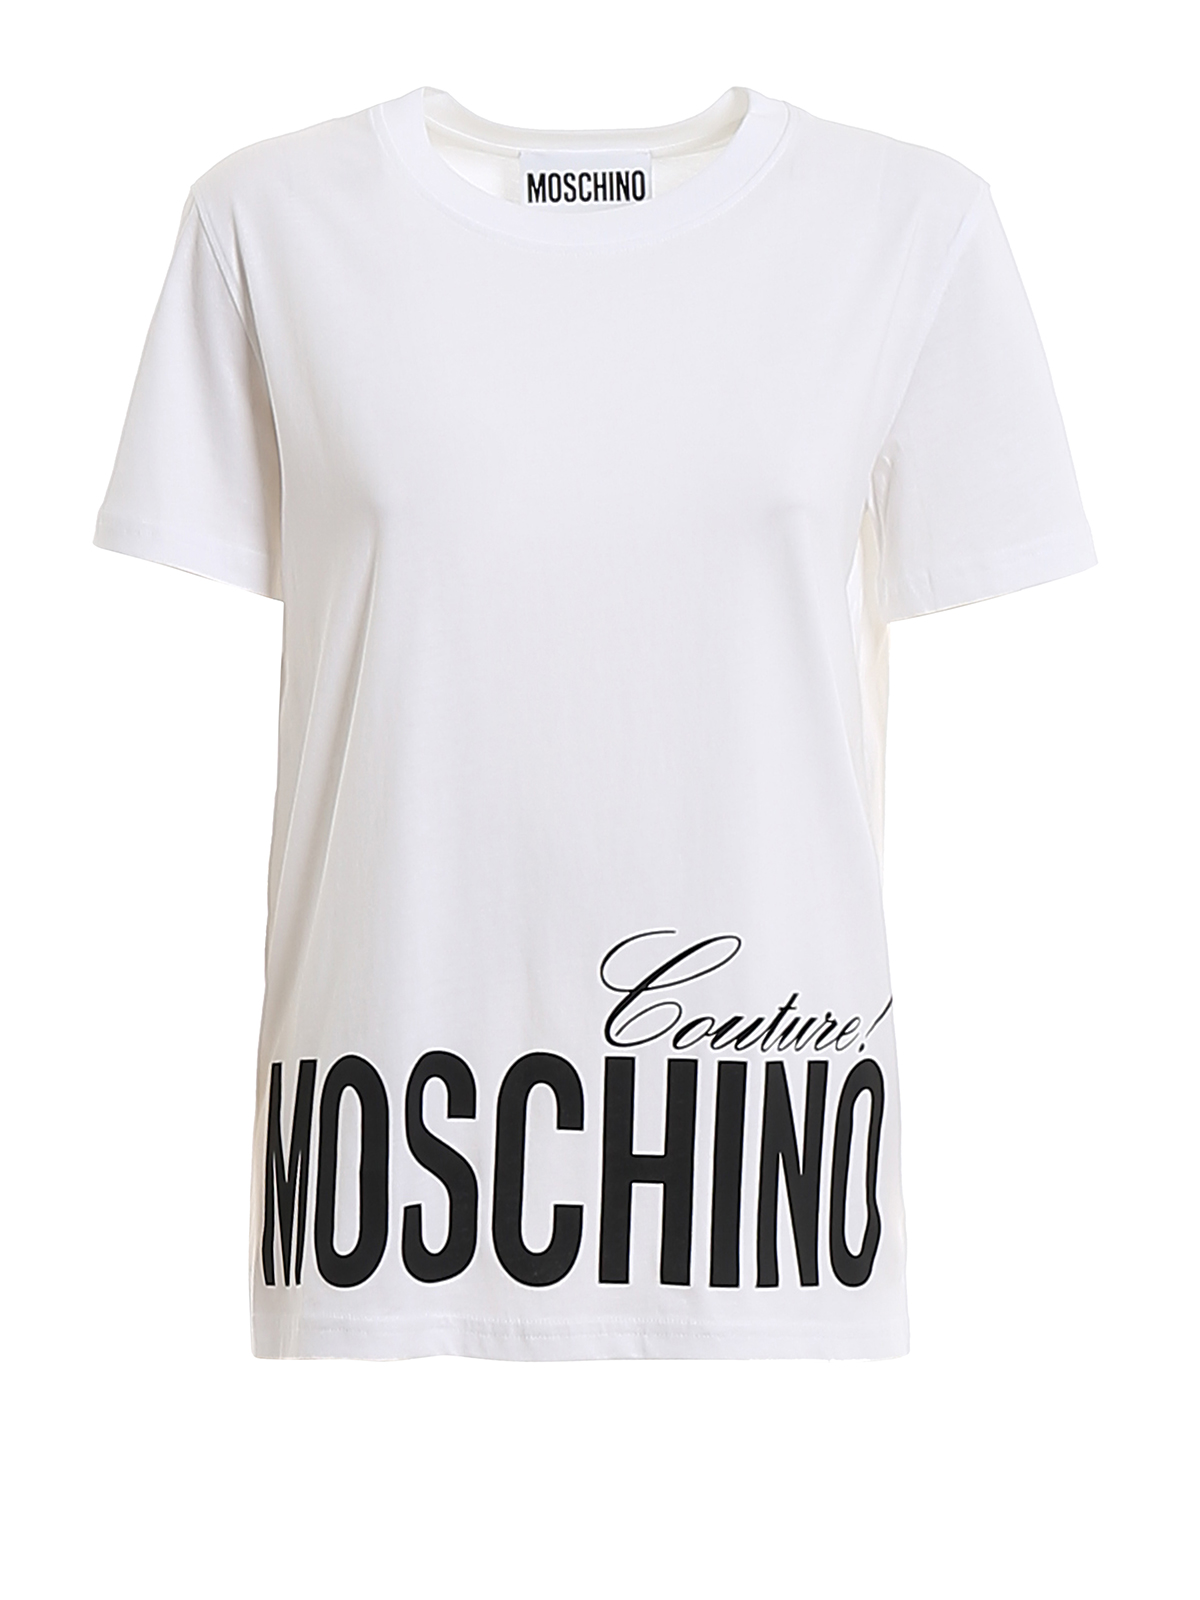 T-shirtMoschino in Cotone da Uomo colore Bianco Uomo T-shirt da T-shirt Moschino 